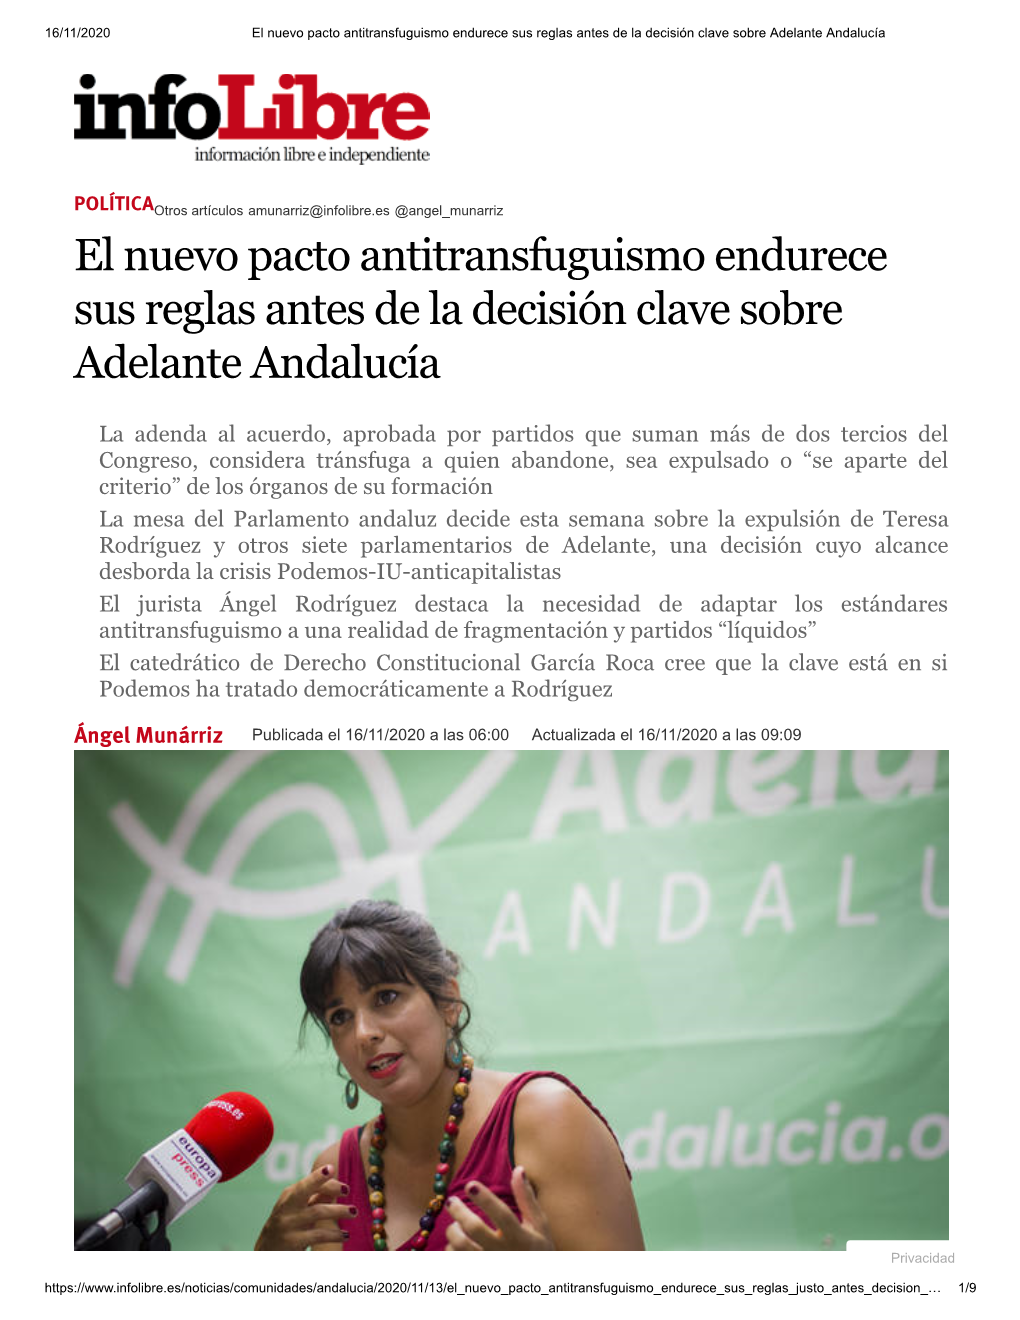 El Nuevo Pacto Antitransfuguismo Endurece Sus Reglas Antes De La Decisión Clave Sobre Adelante Andalucía